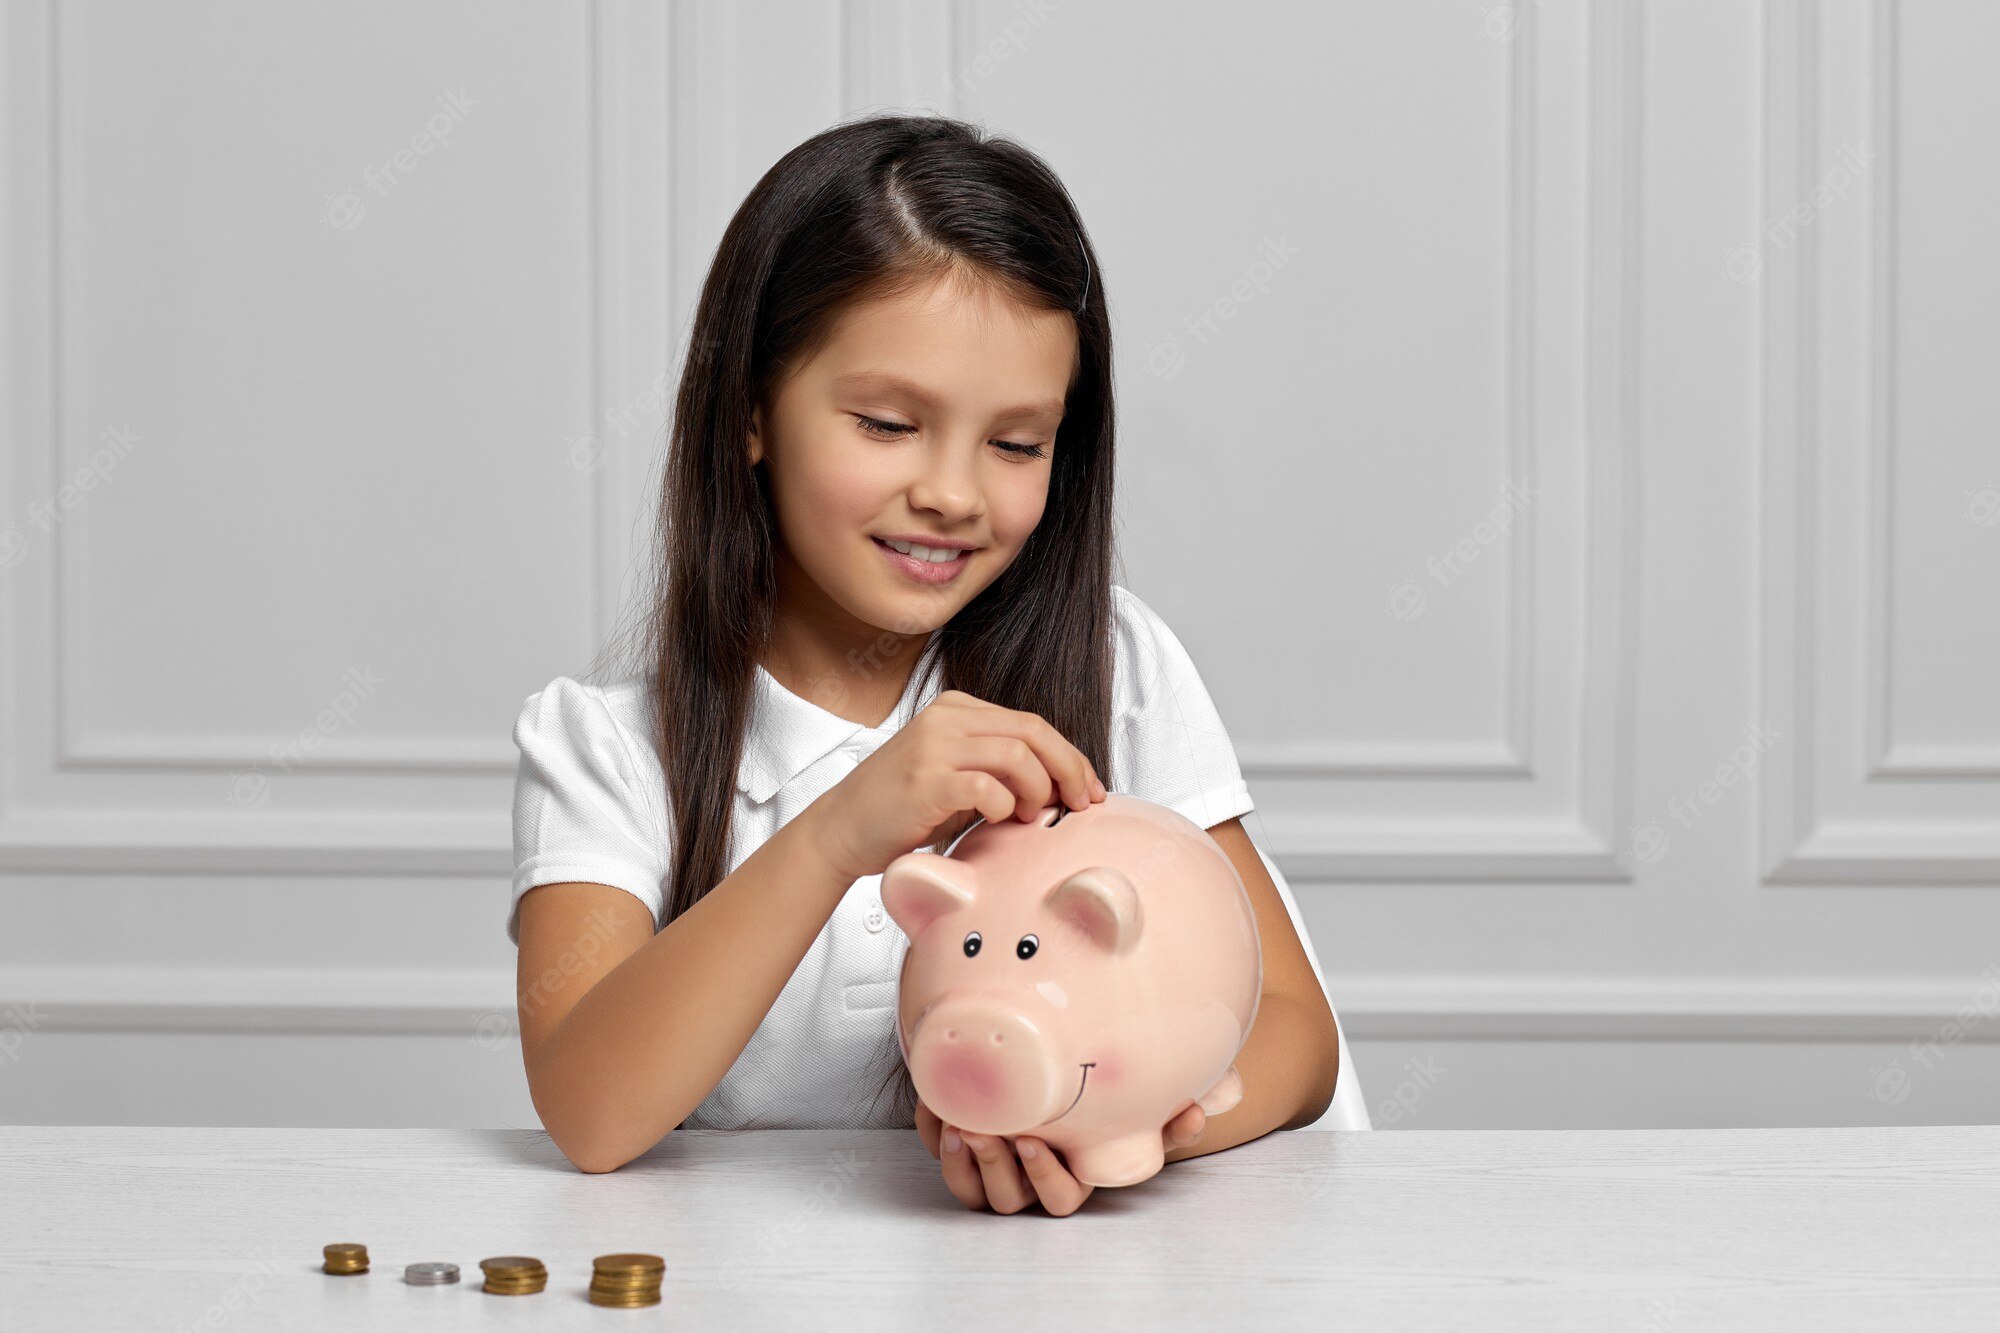 Khi mới 6 tuổi, A đã có được khoản tiết kiệm đầu tiên trong đời khoảng 2,7 triệu đồng